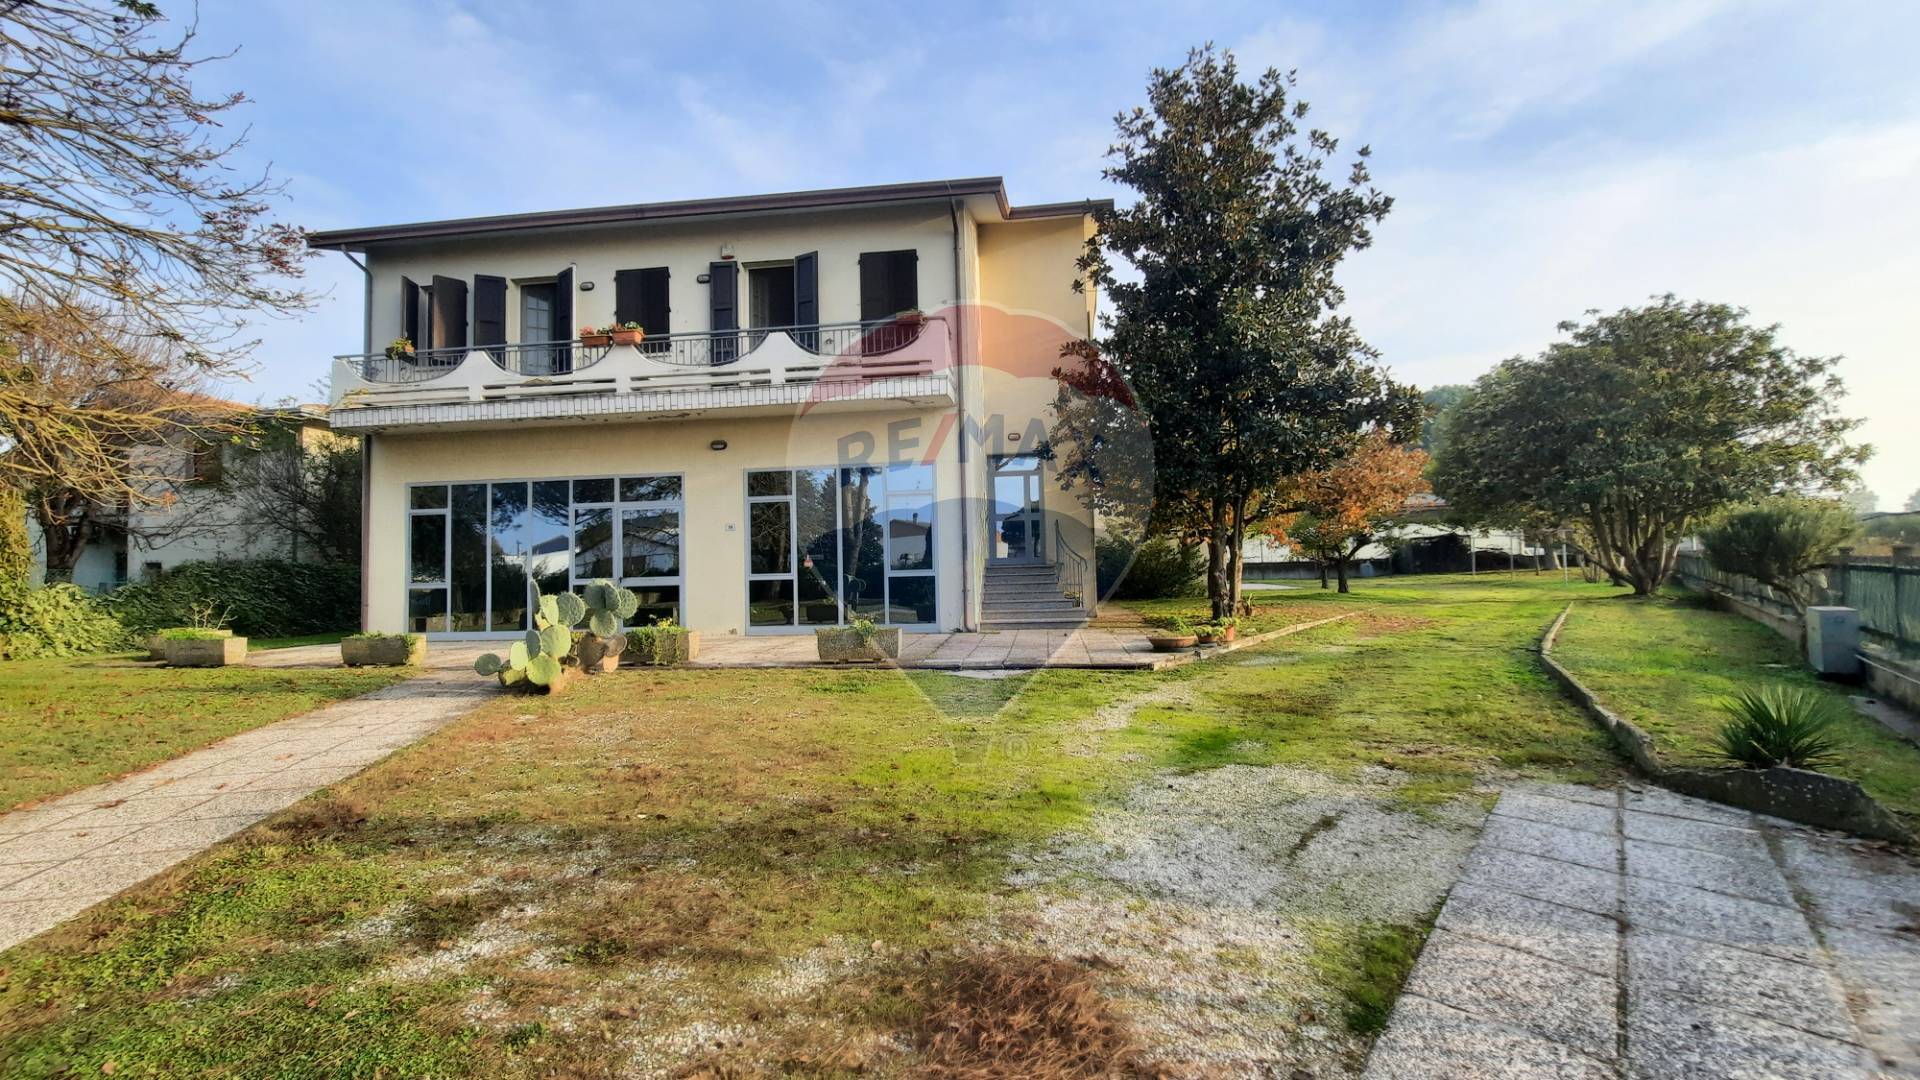 Villa in vendita a Portomaggiore, 6 locali, prezzo € 167.000 | PortaleAgenzieImmobiliari.it